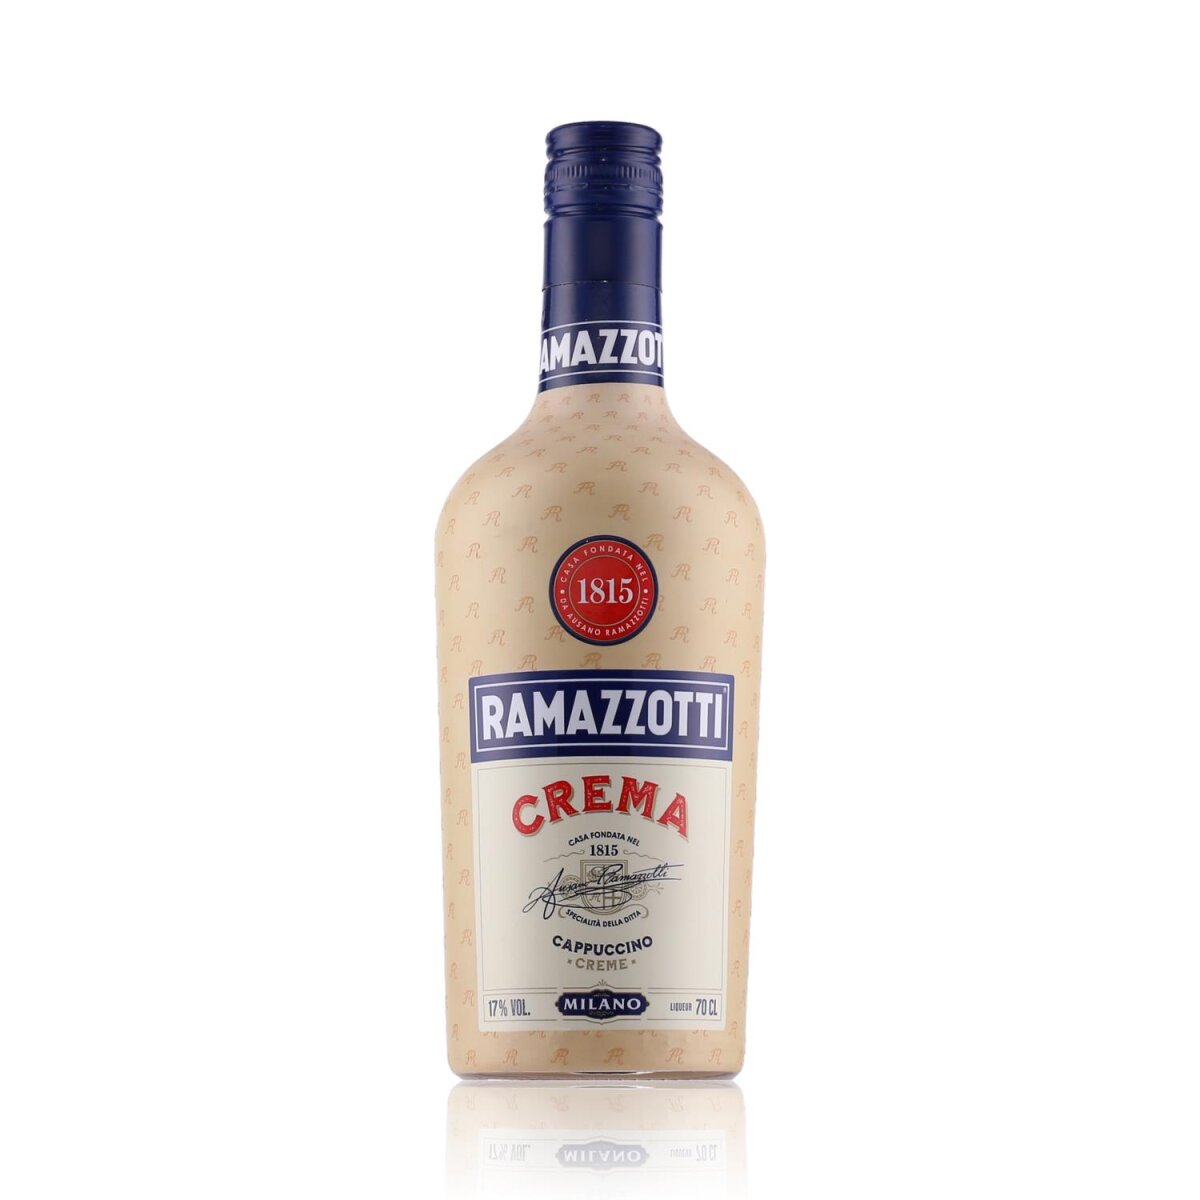 Ramazzotti Crema Cappuccino Likör 17% Vol. 0,7l, 14,09 €